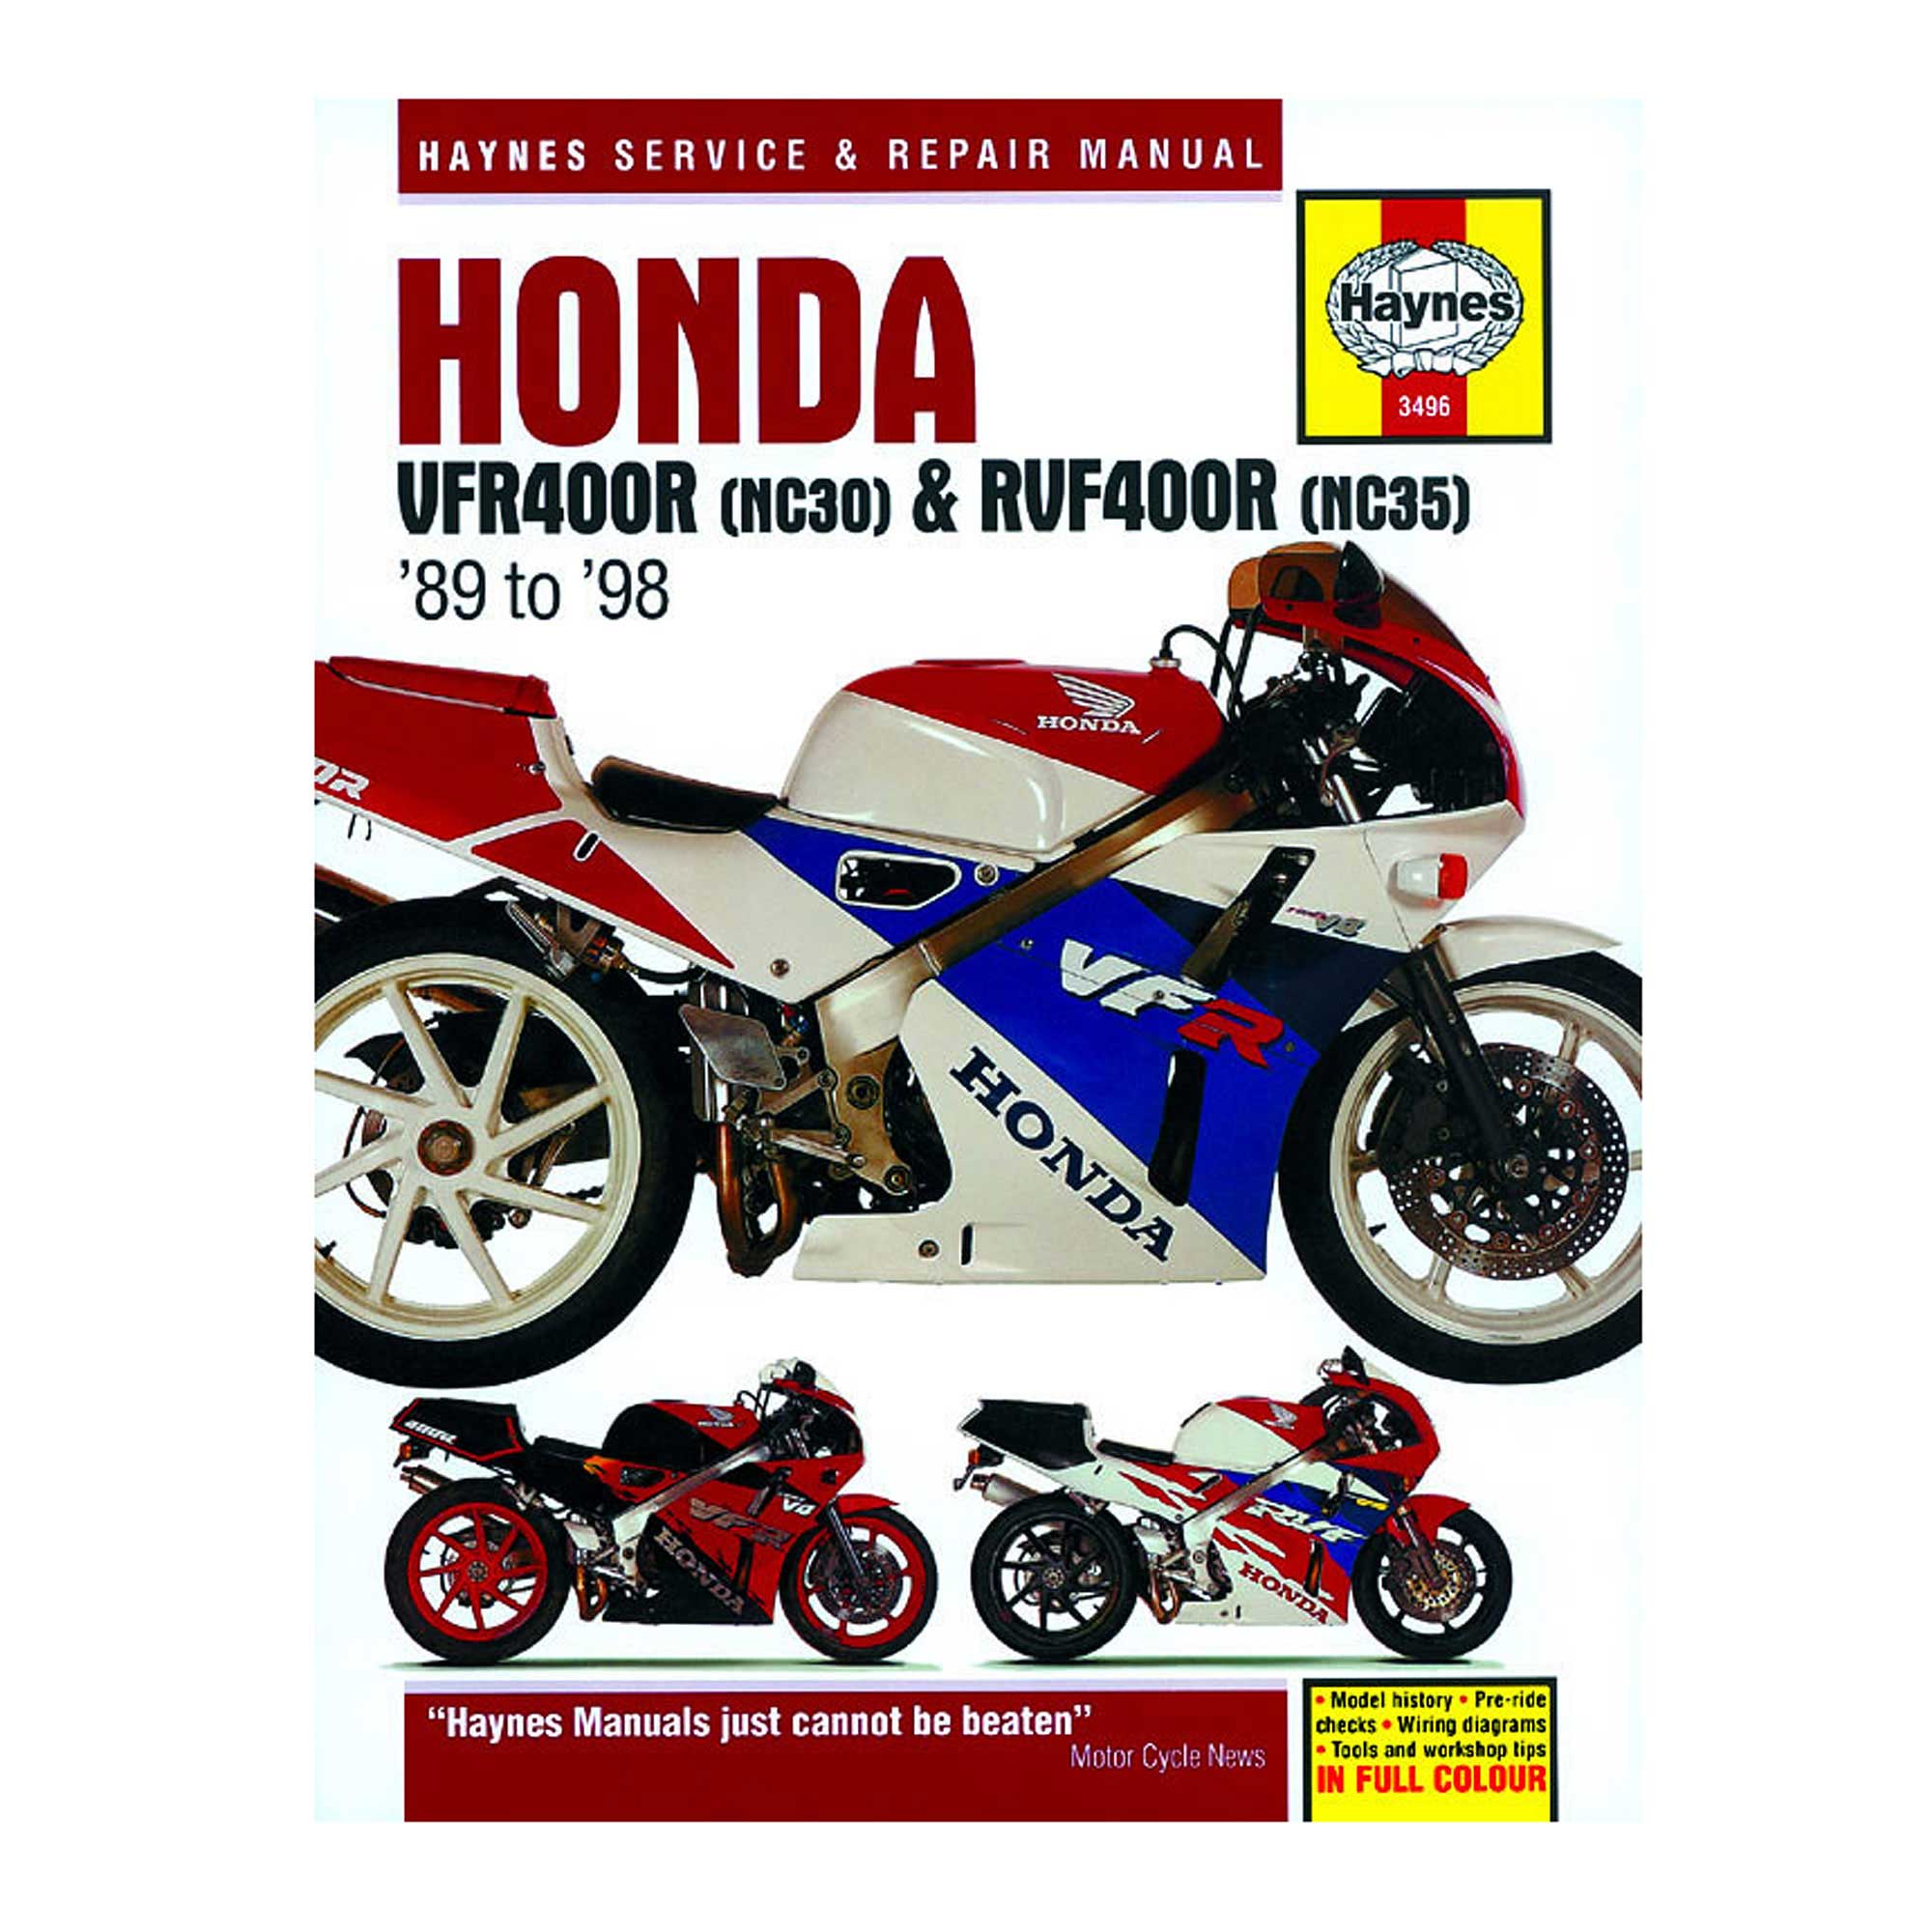 motorcycle service manual honda